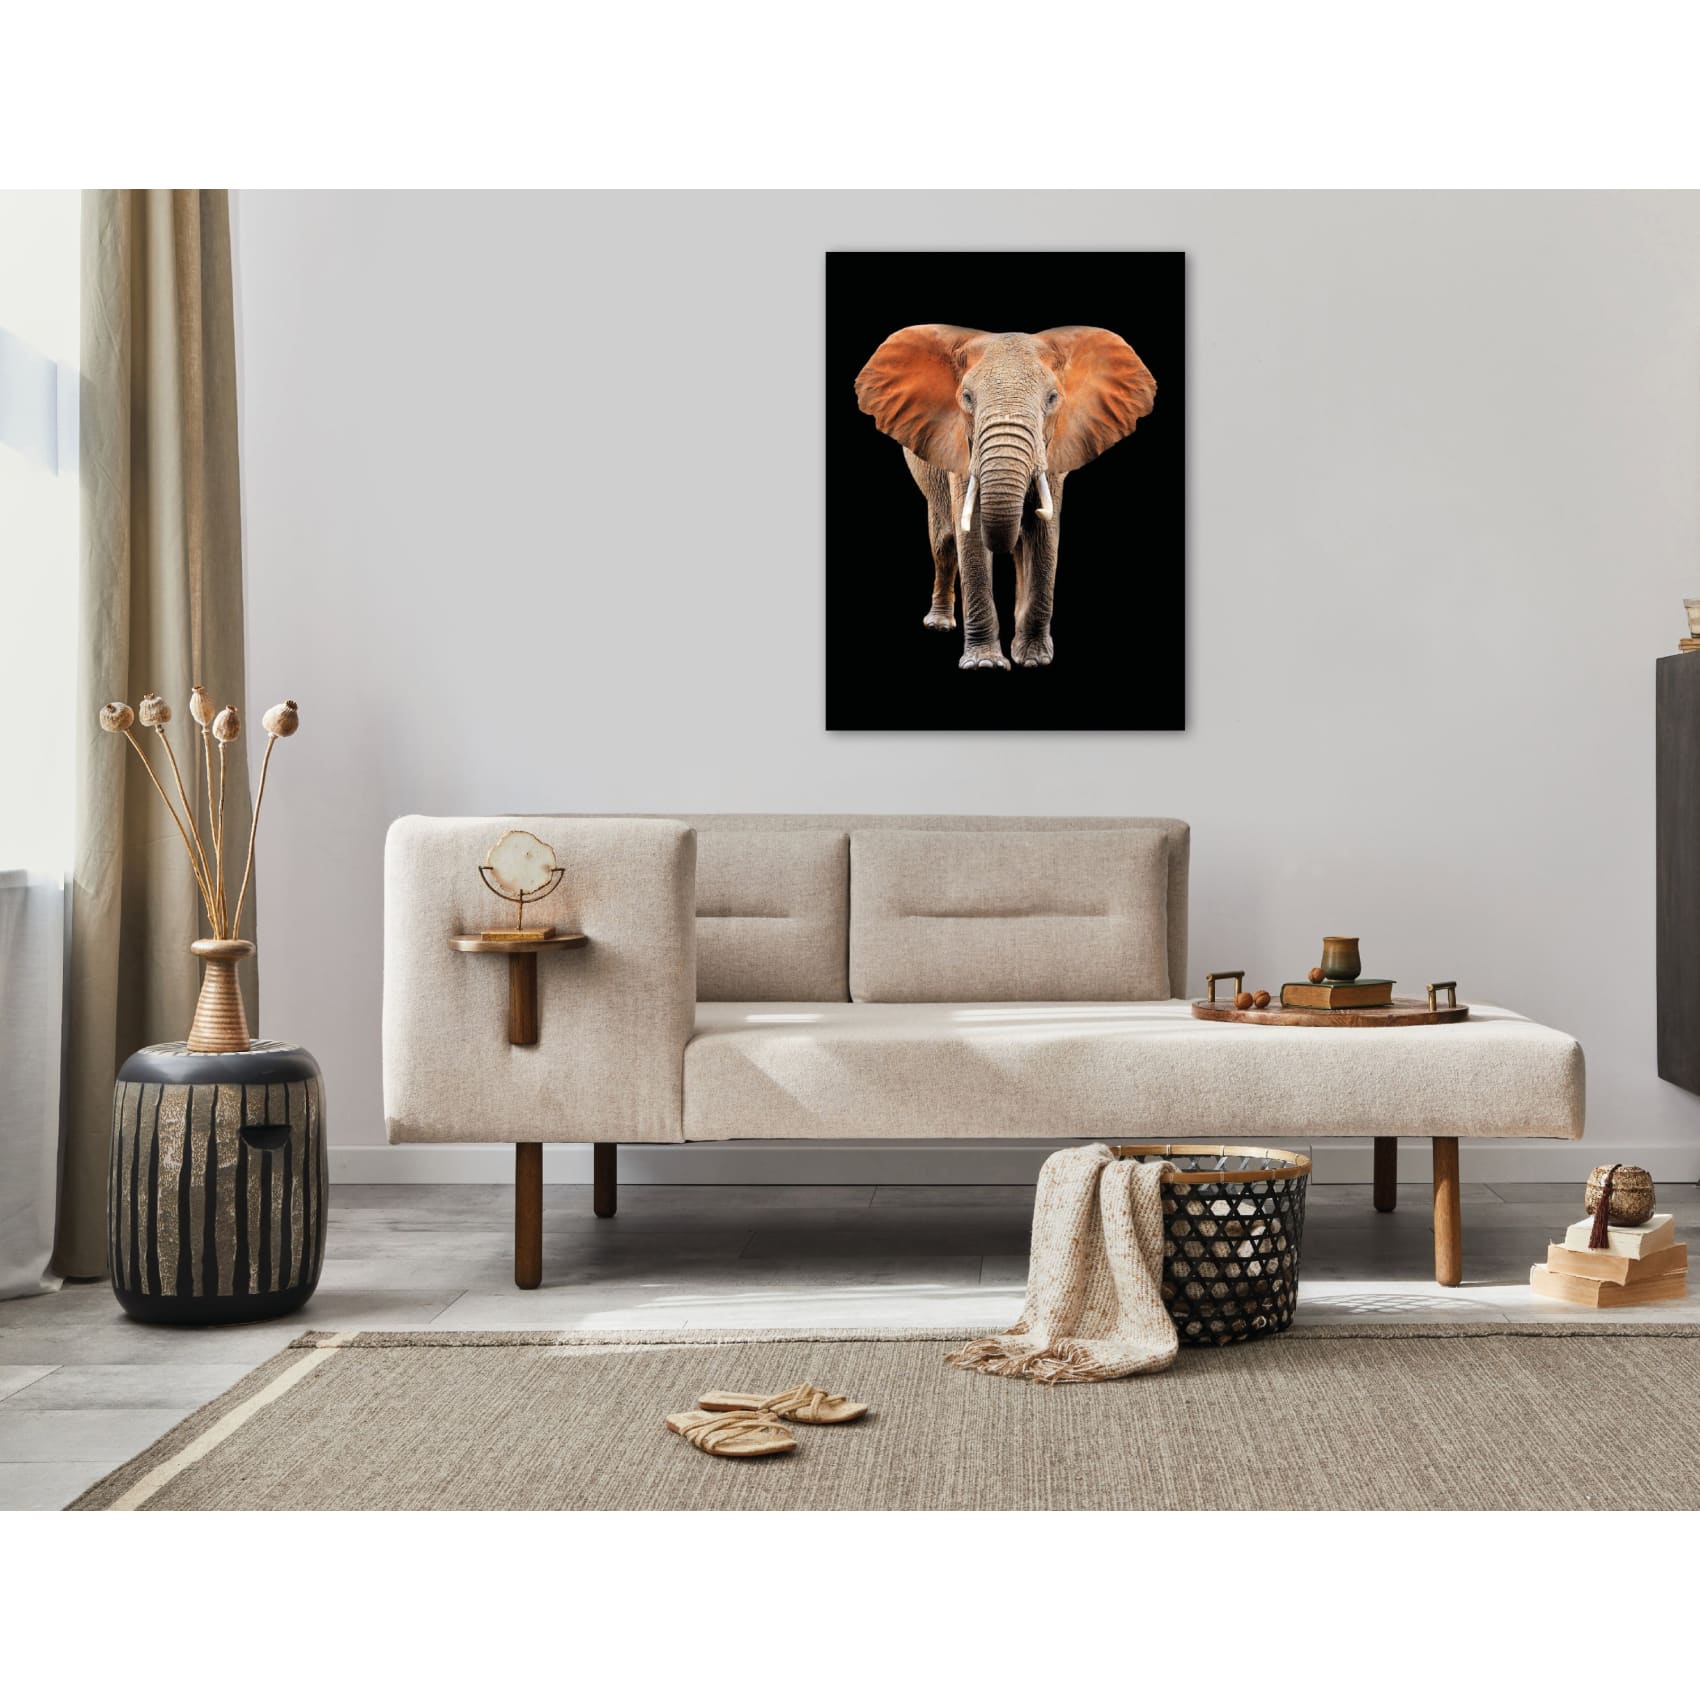 cuadro decorativo, decoración, sala, estudio, habitación, animal, elefante